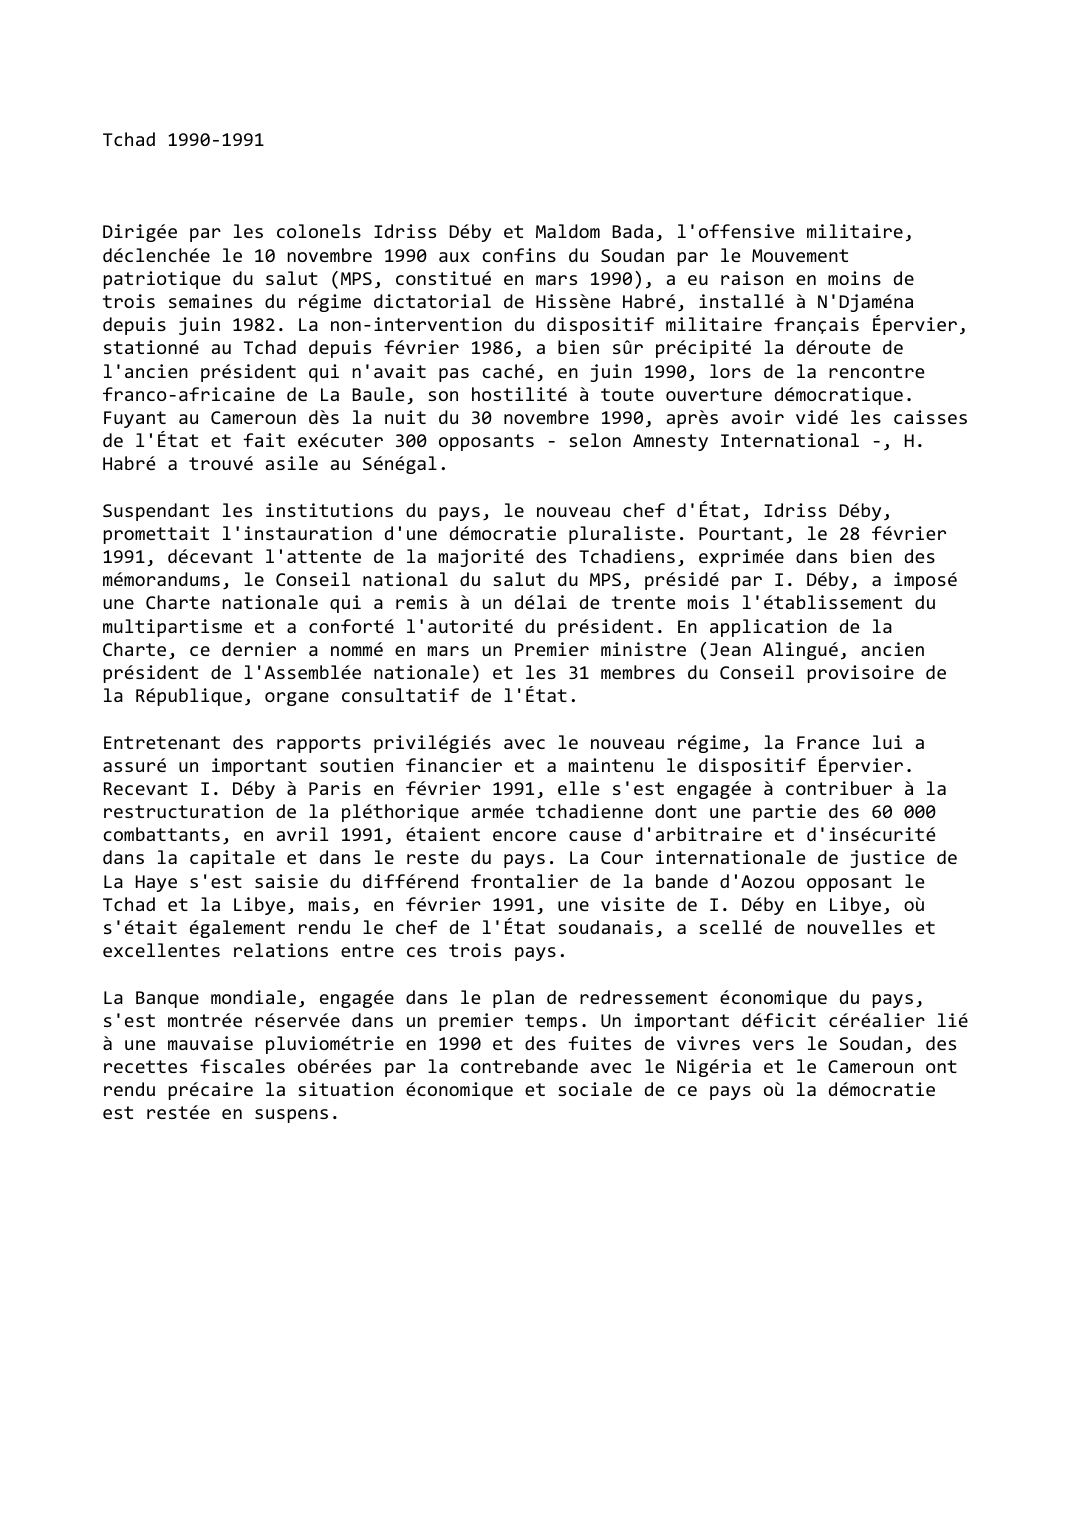 Prévisualisation du document Tchad 1990-1991